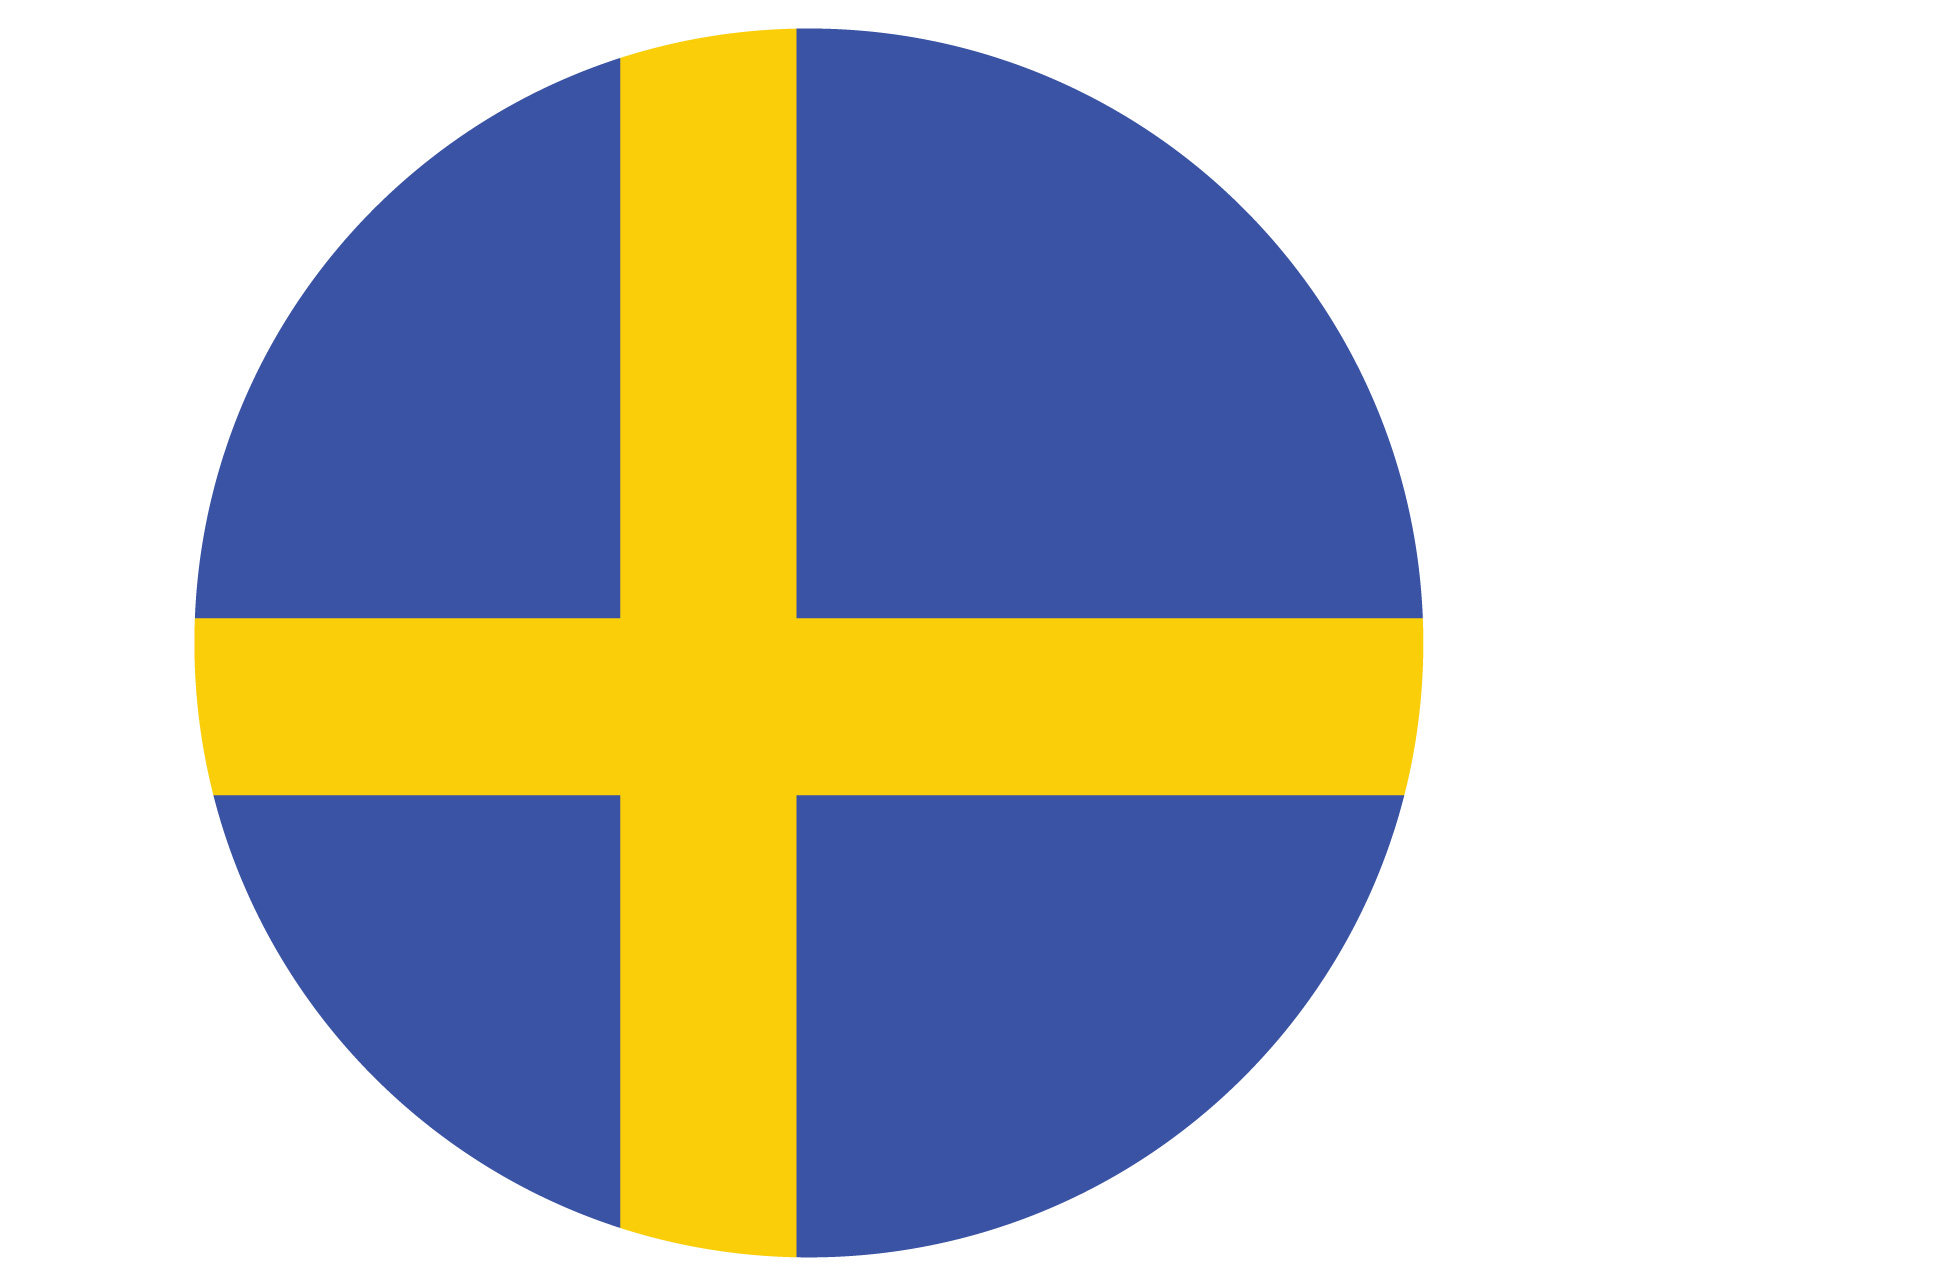 Bandera Suecia